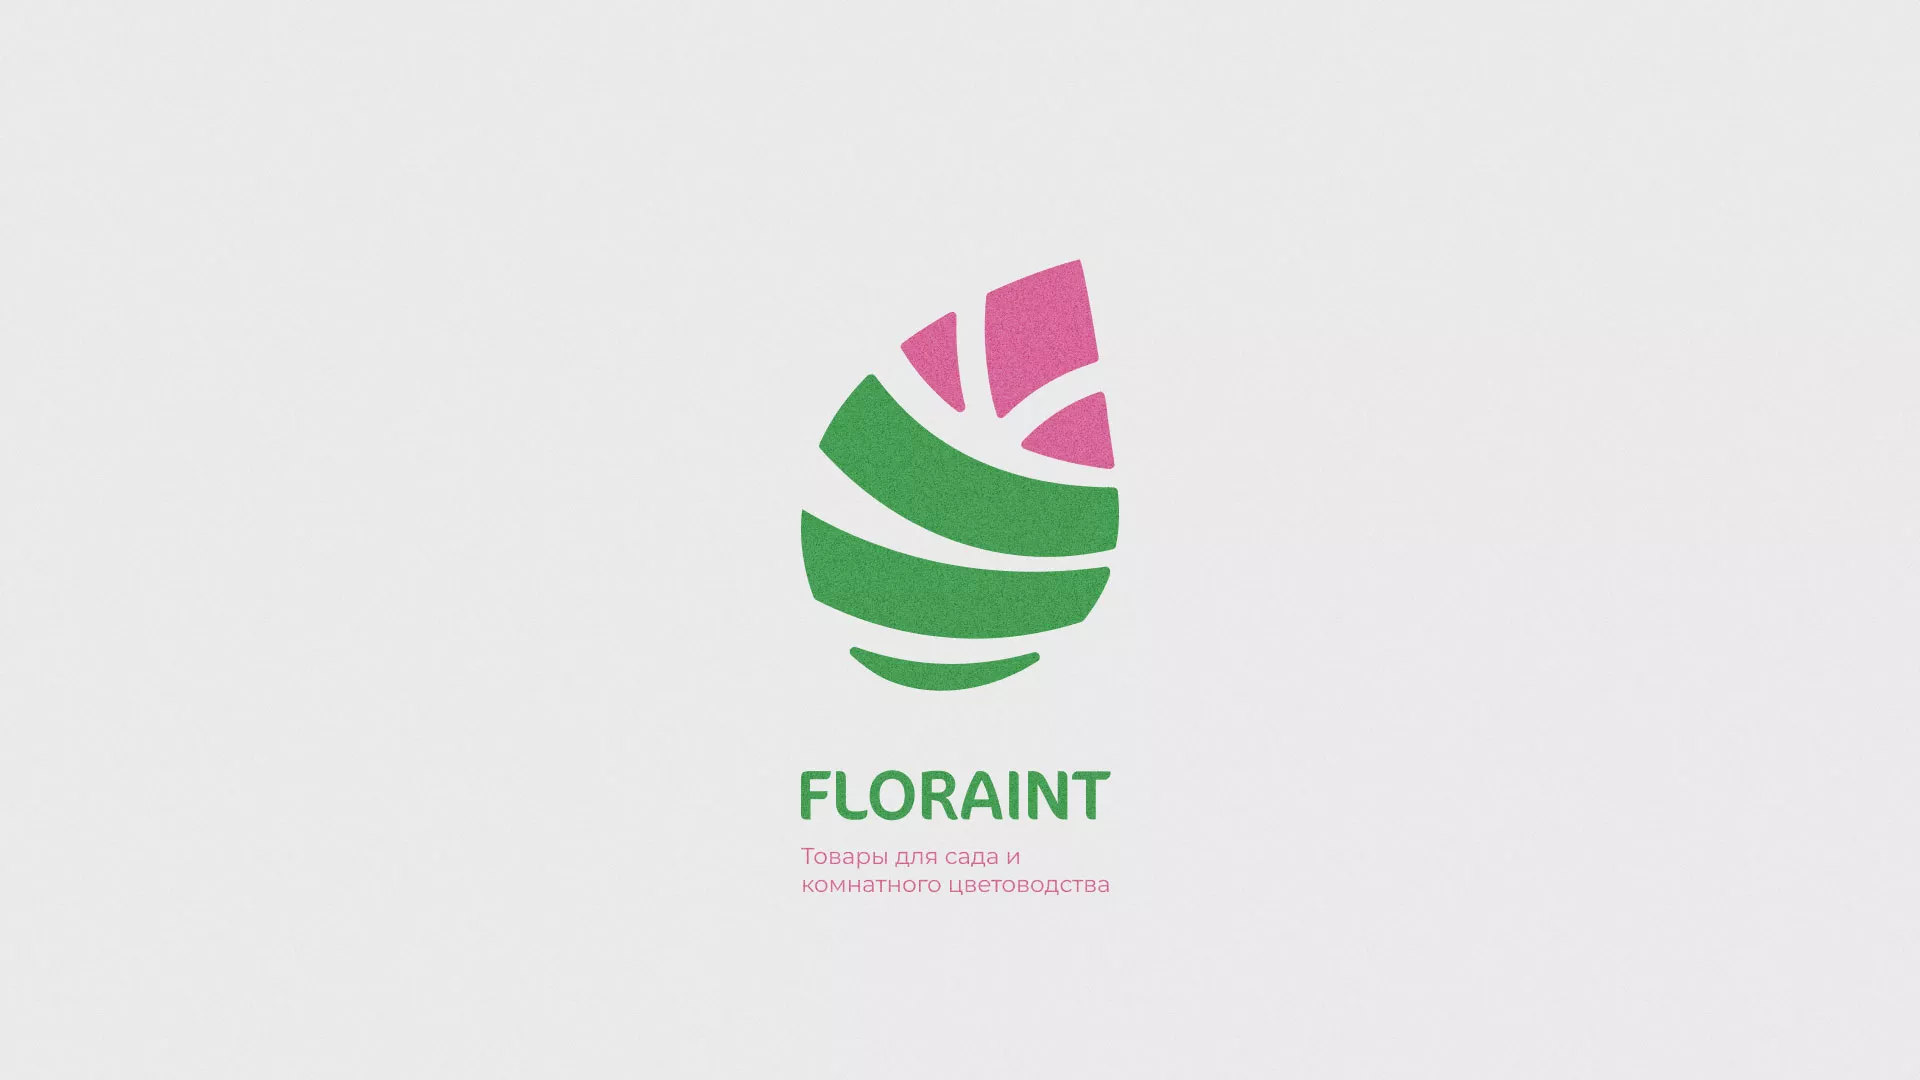 Разработка оформления профиля Instagram для магазина «Floraint» в Пионерском